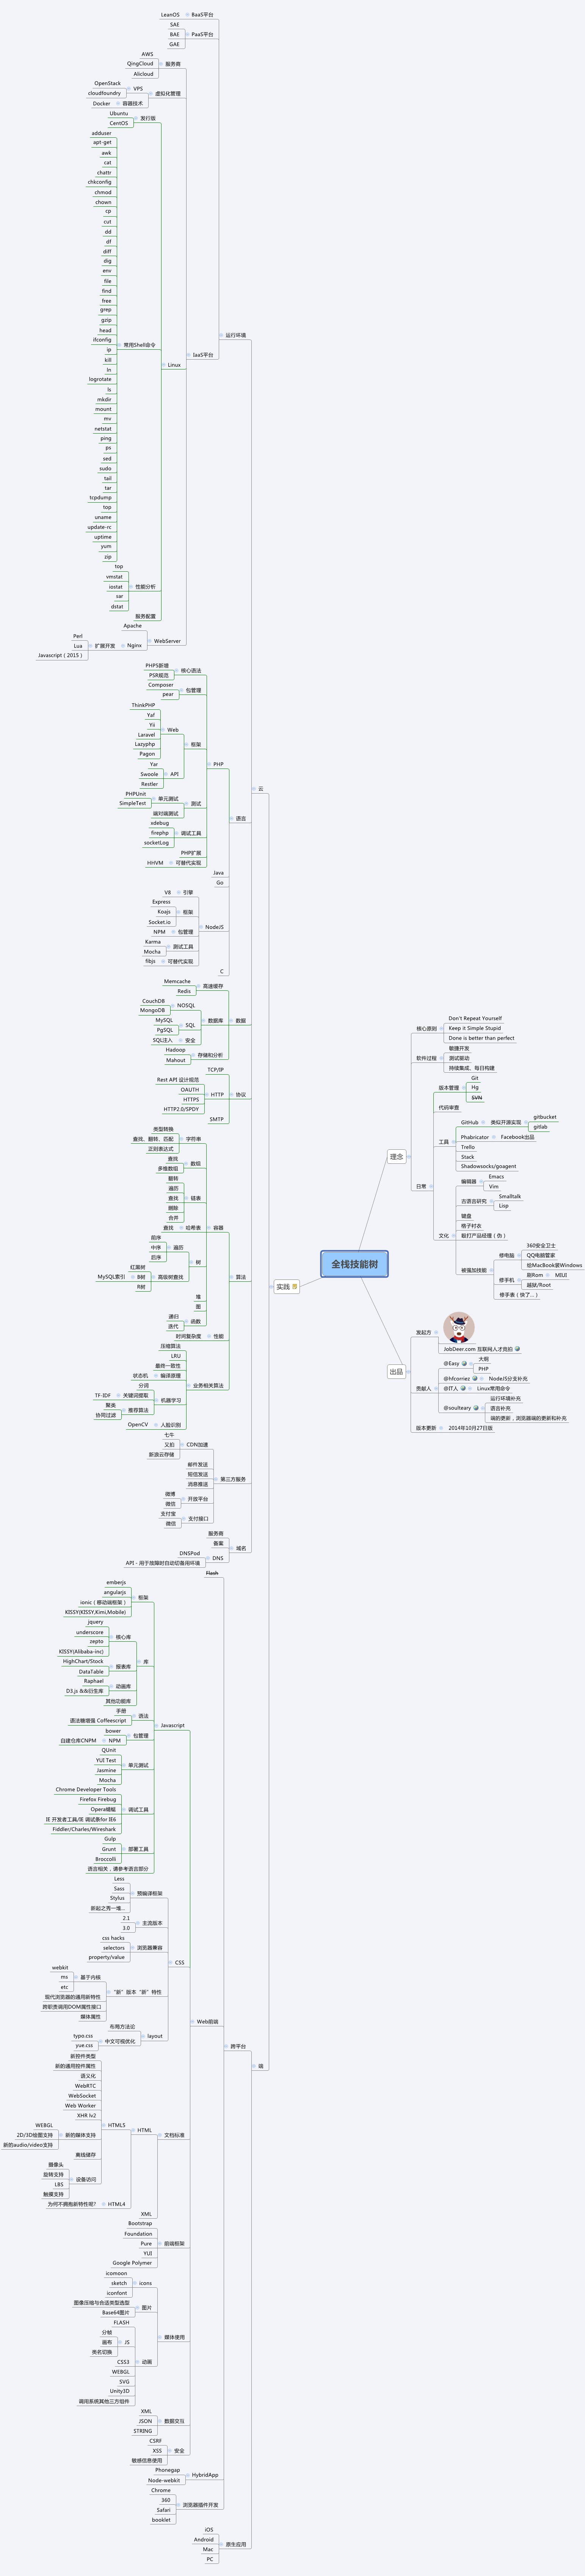 Full stack developer skill tree